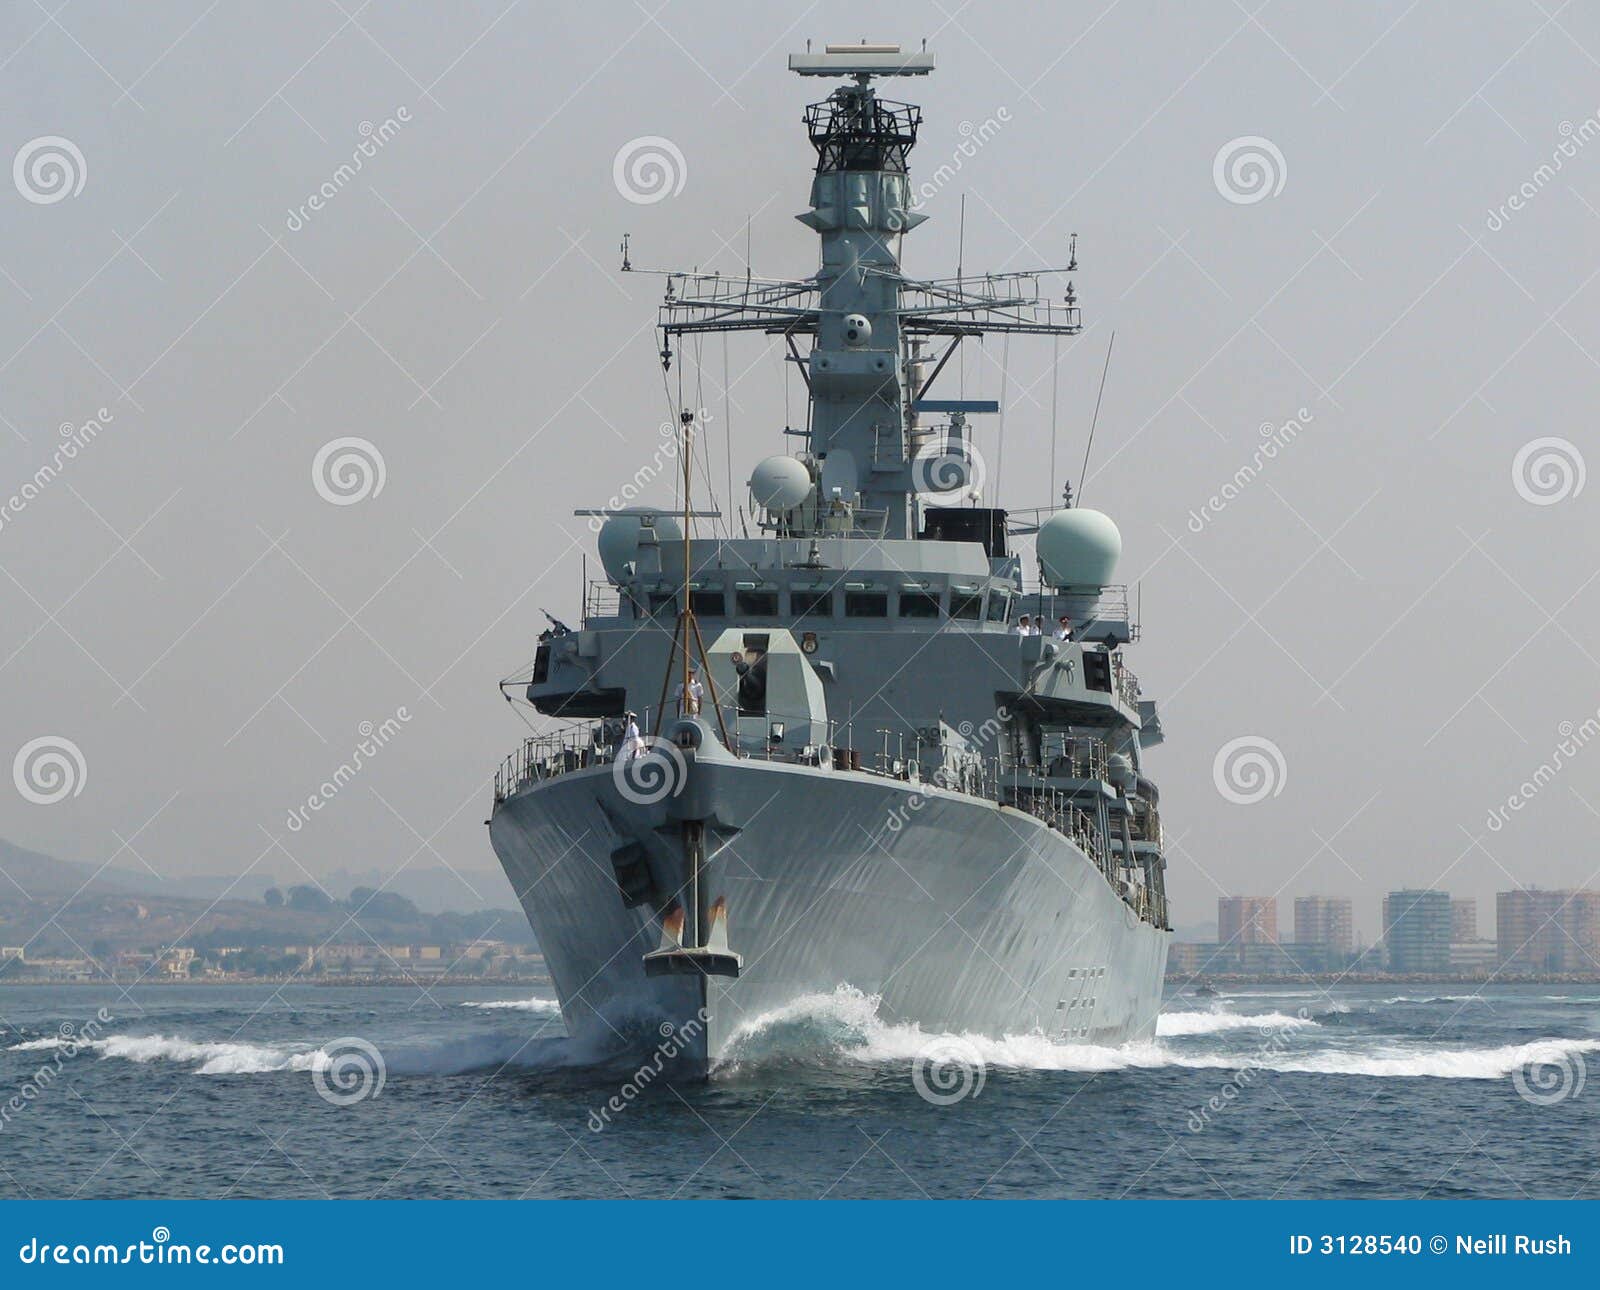 royal navy frigate